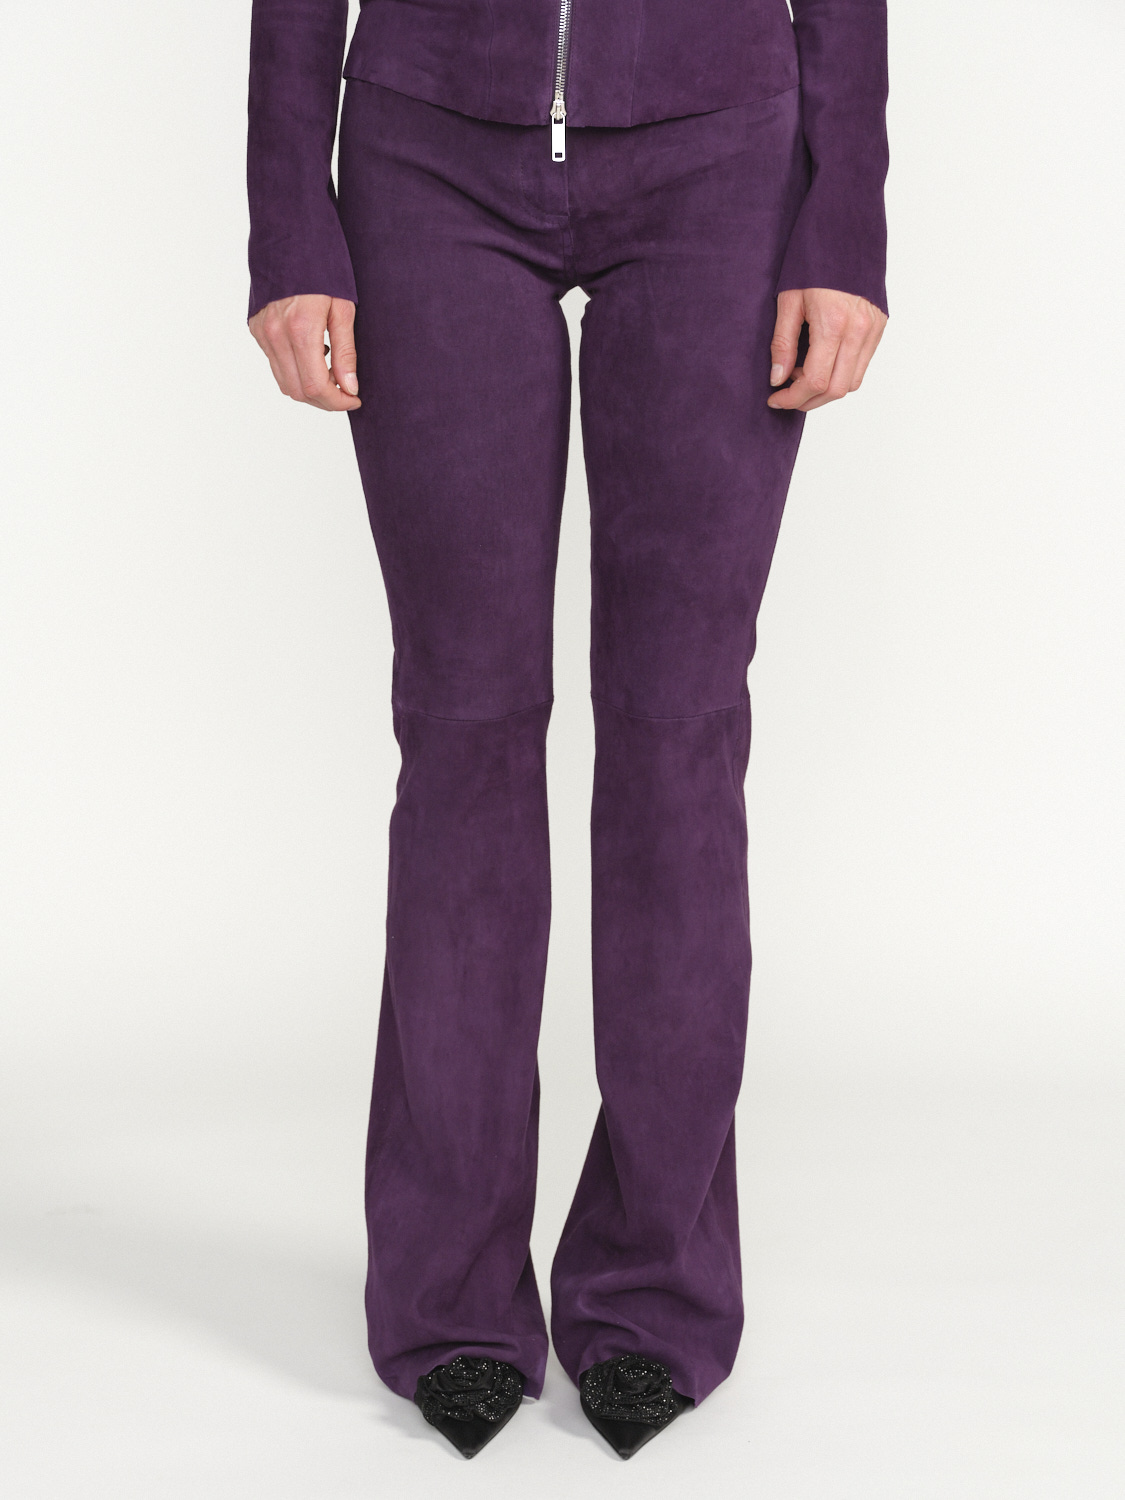 jitrois Pantalon Pika - Pantalon de bootcut en daim violet 40